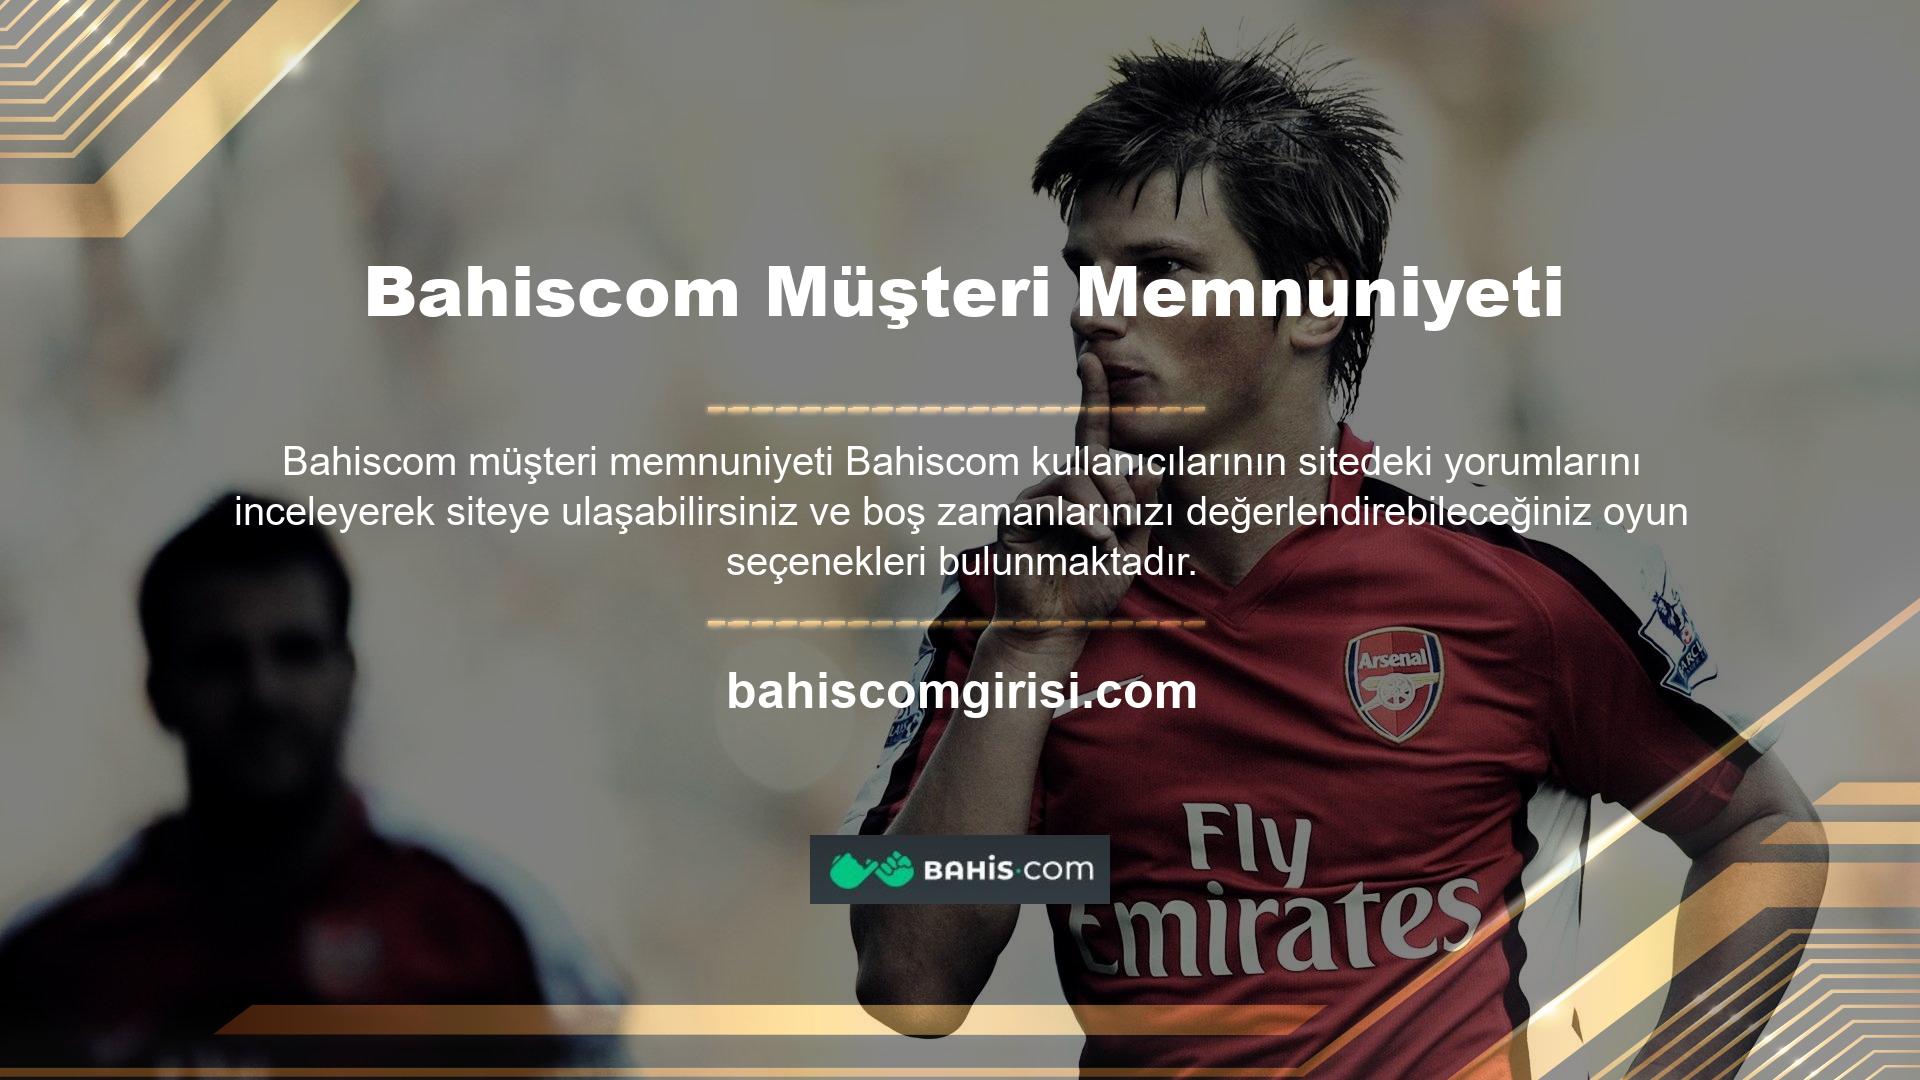 Bahiscom web sitesi yeni kullanıcılara harika bir hoş geldin bonusu sunmaktadır